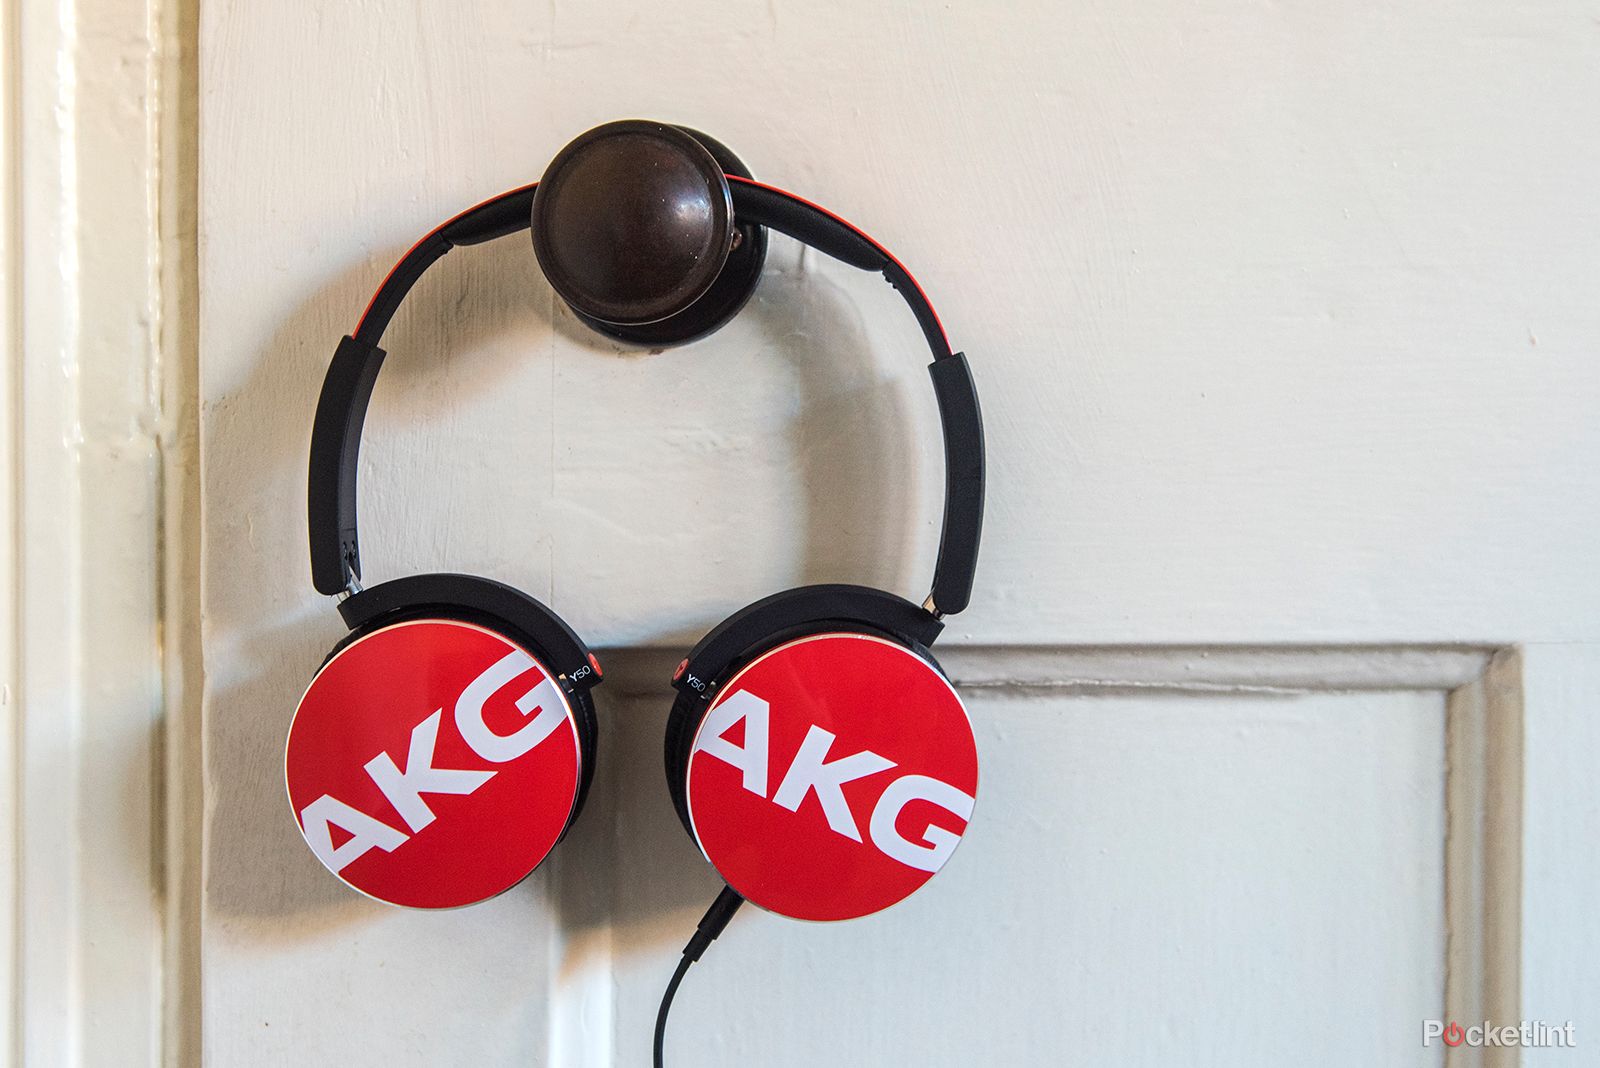 akg y50 on ear headphones review image 1